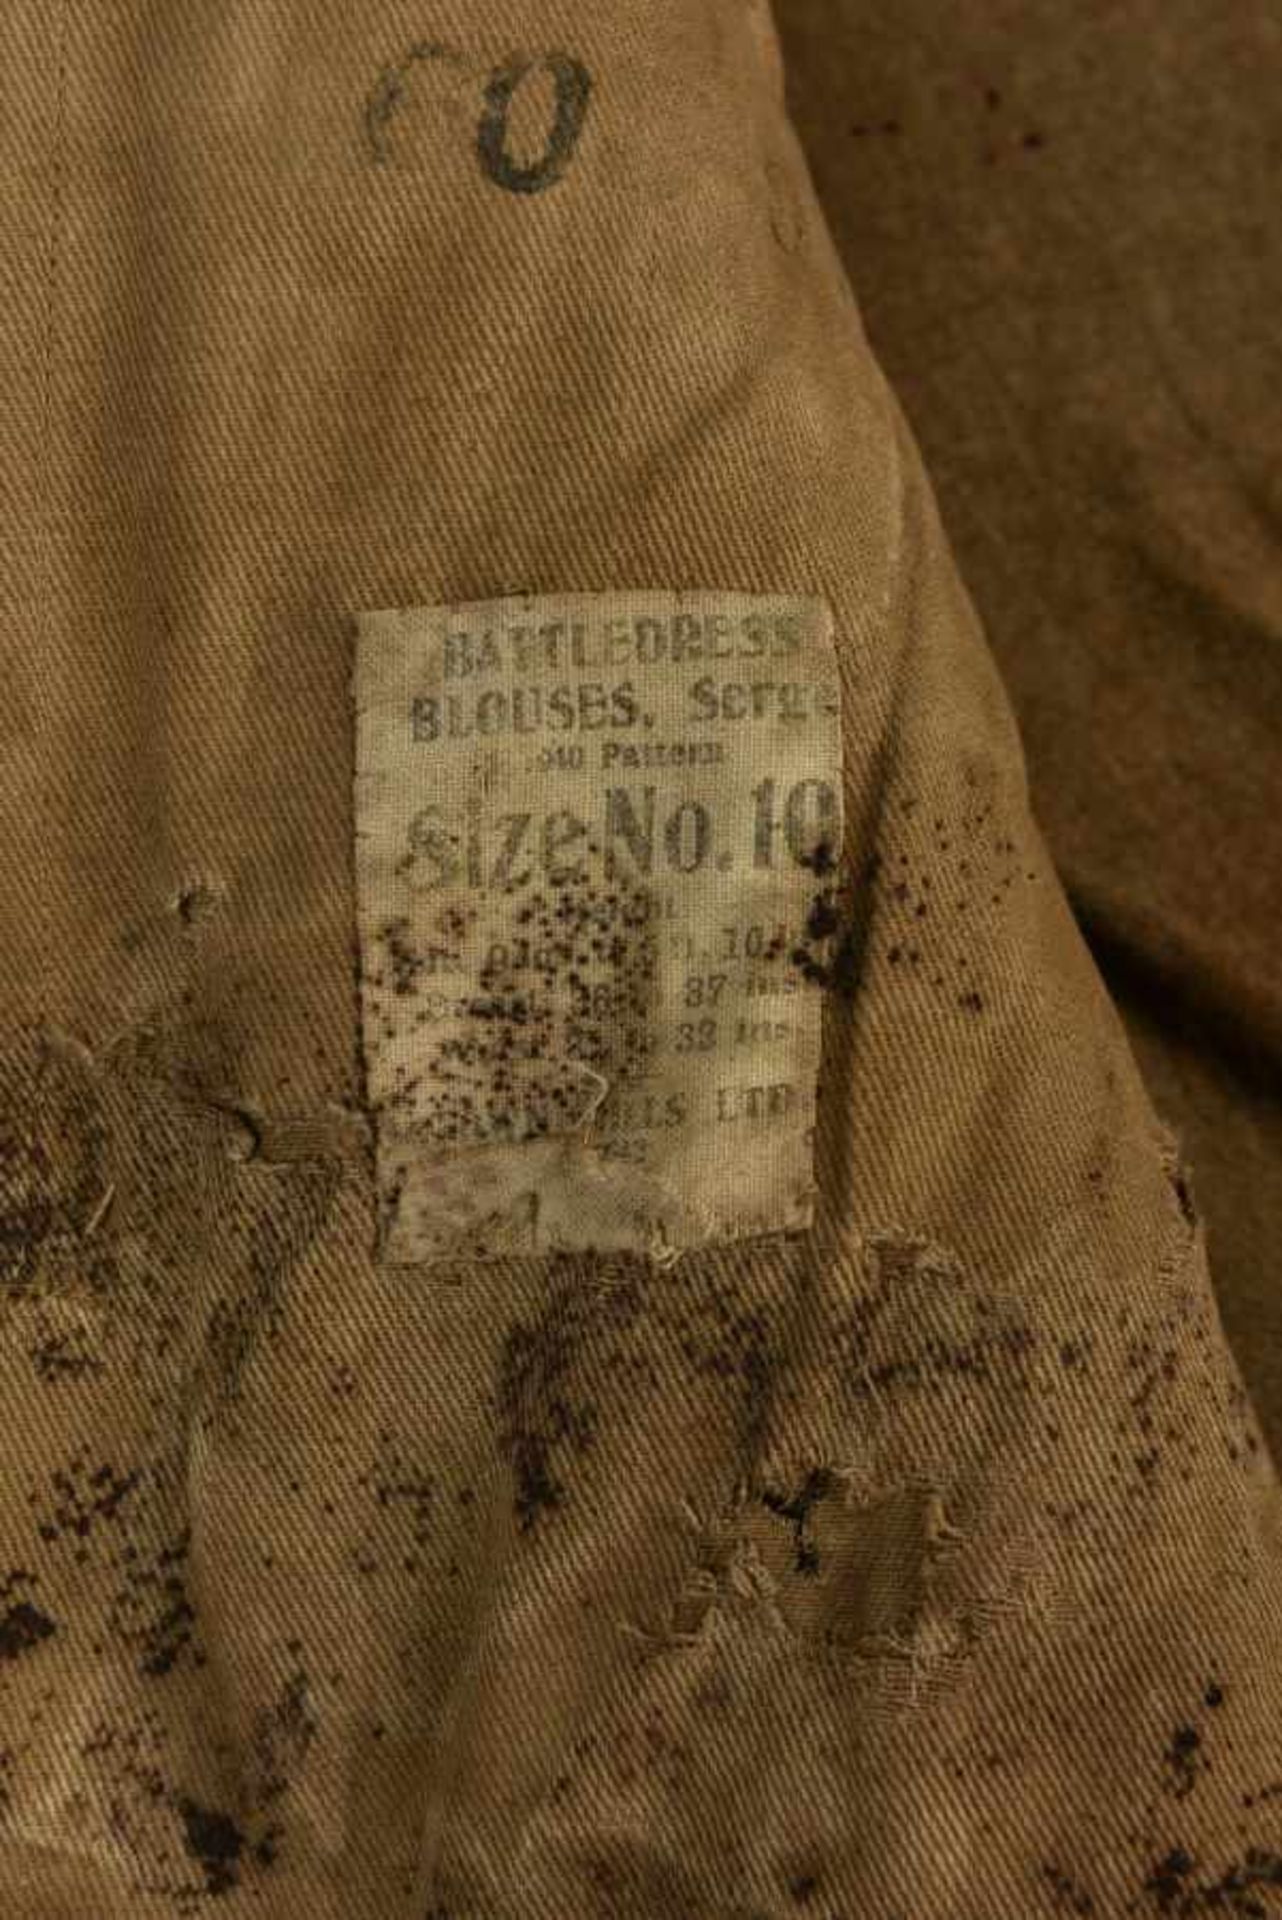 Relique de Battle Dress du 9ème battaillon de la 6ème Airborne. Remains of the Battledress of the - Image 2 of 4